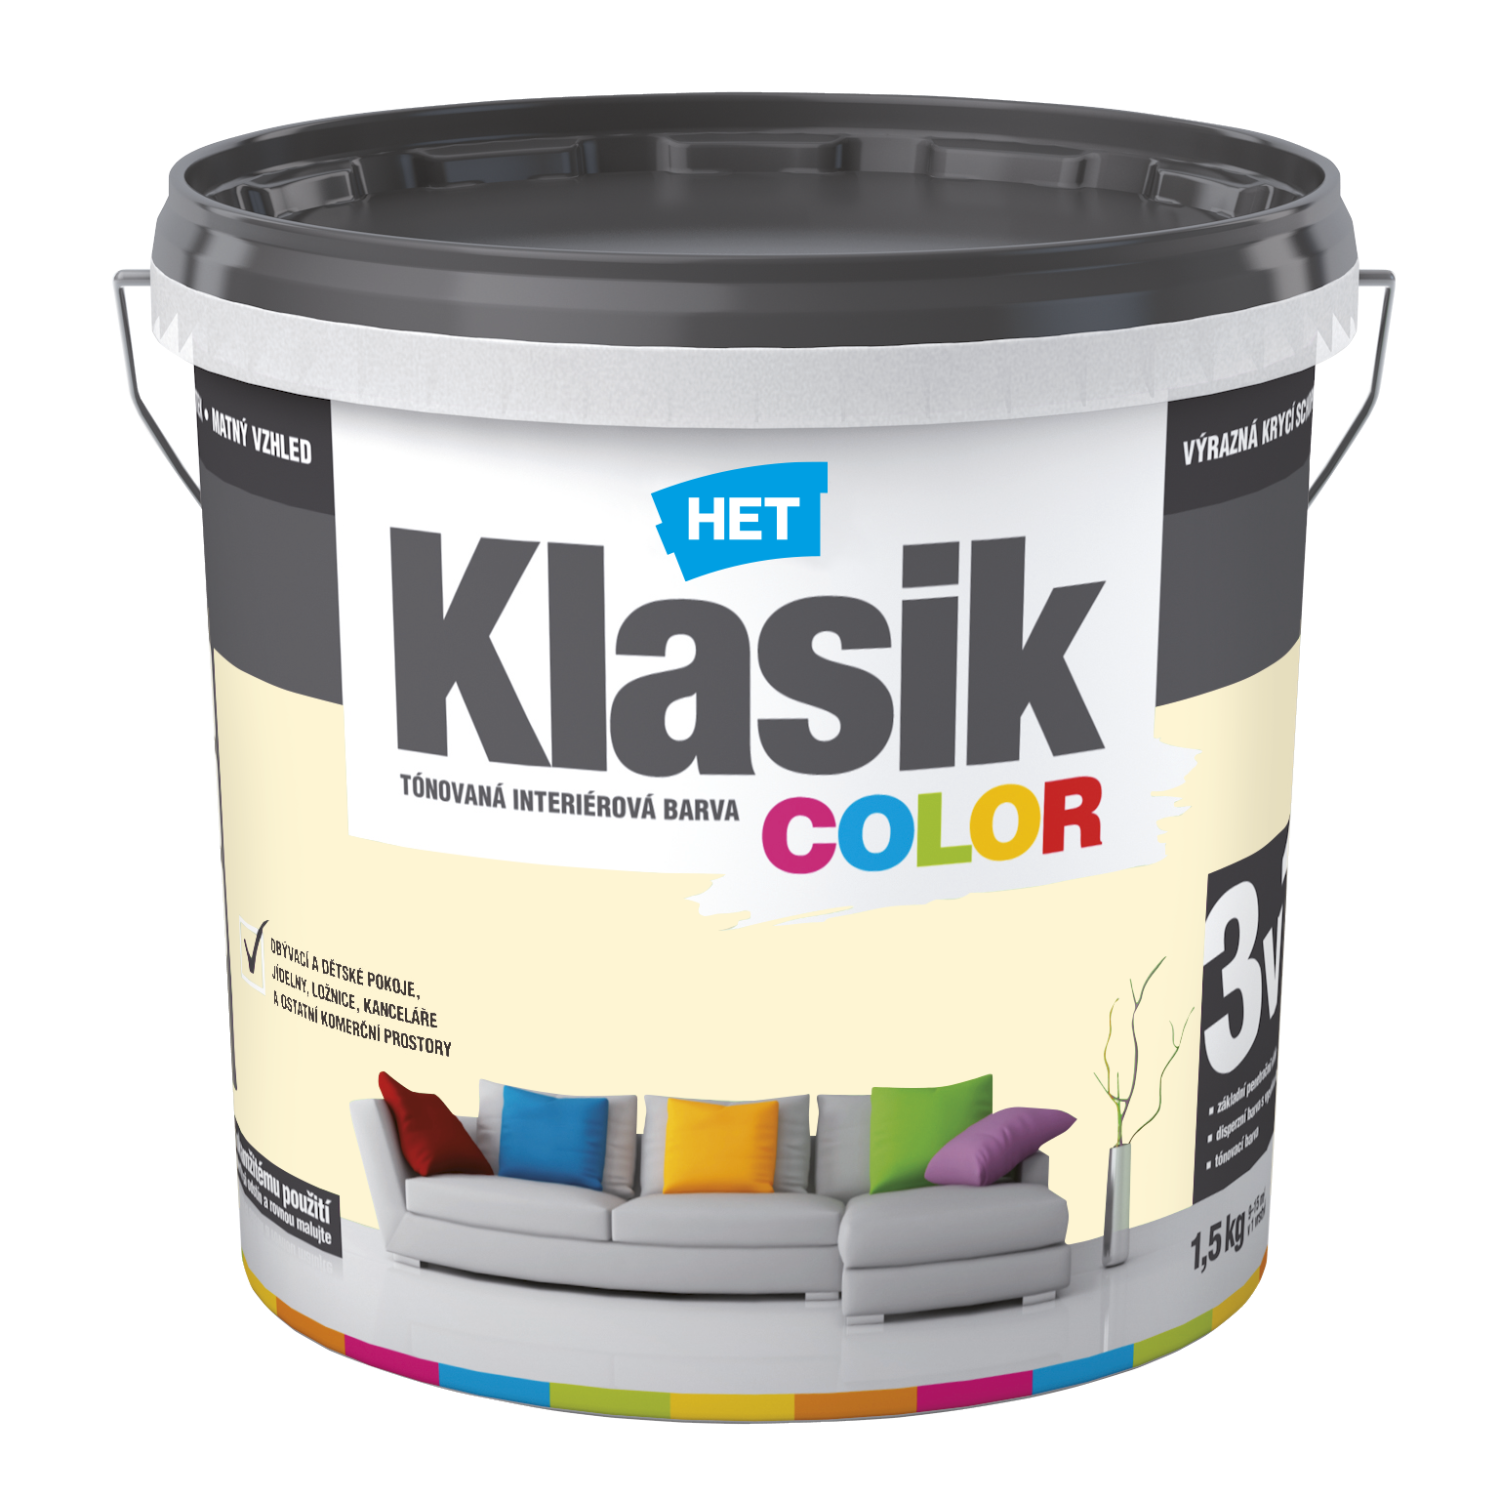 HET Klasik COLOR tónovaná interiérová akrylátová disperzná oteruvzdorná farba 1,5 kg, KC0667 - žltý vanilkový